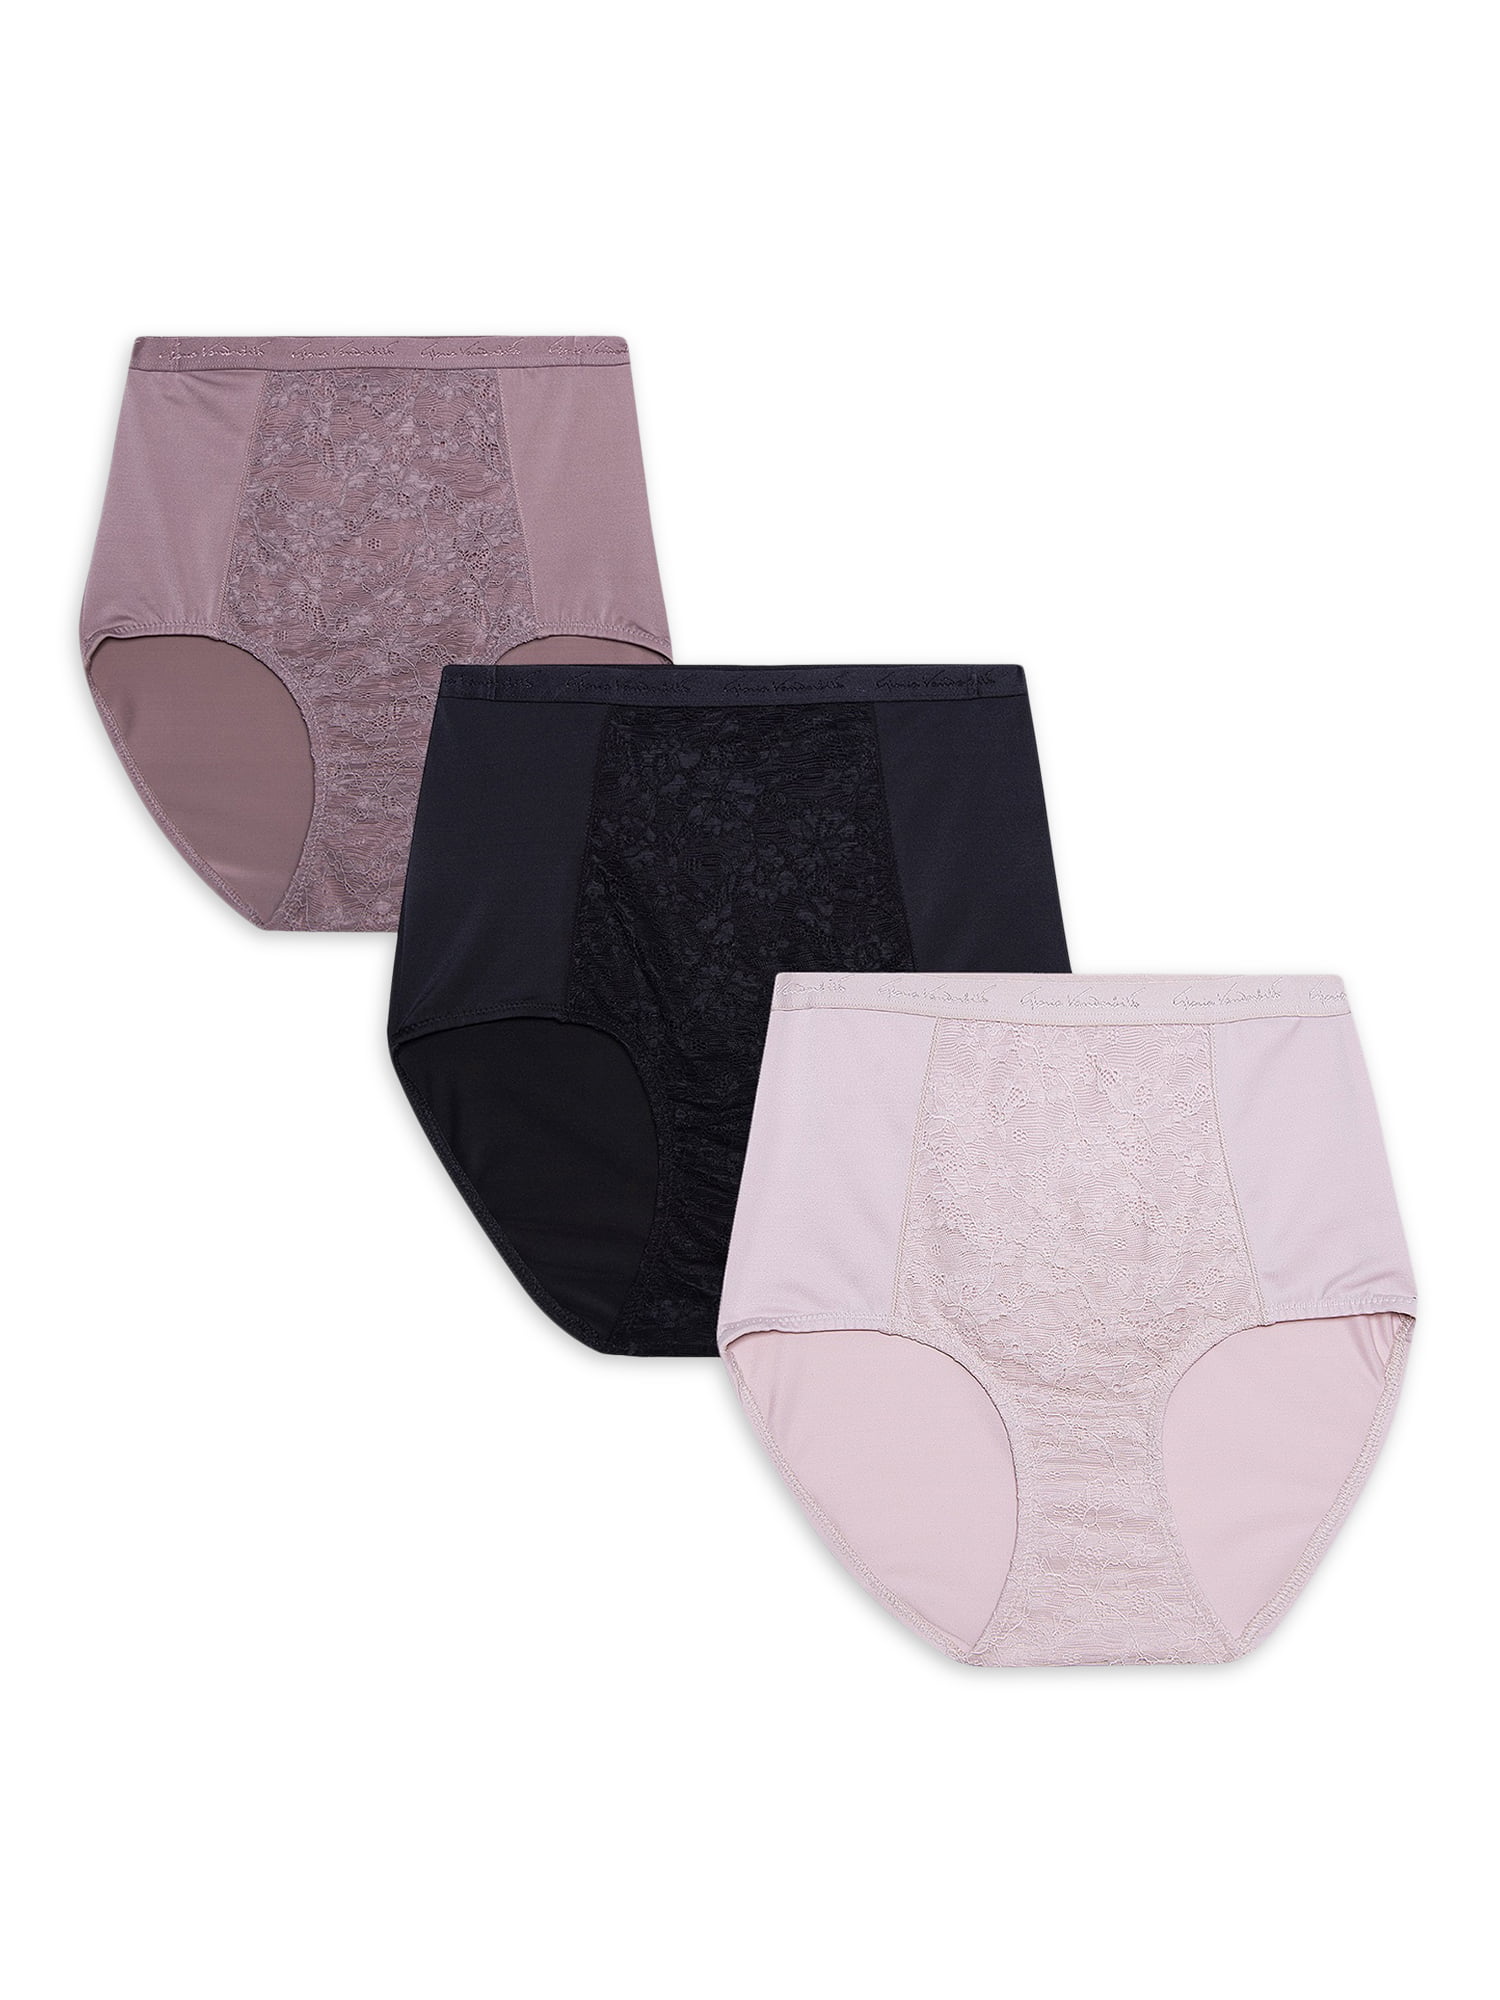 GLORIA VANDERBILT Soft 3 Pack Seamless Panties Briefs GRAY Floral